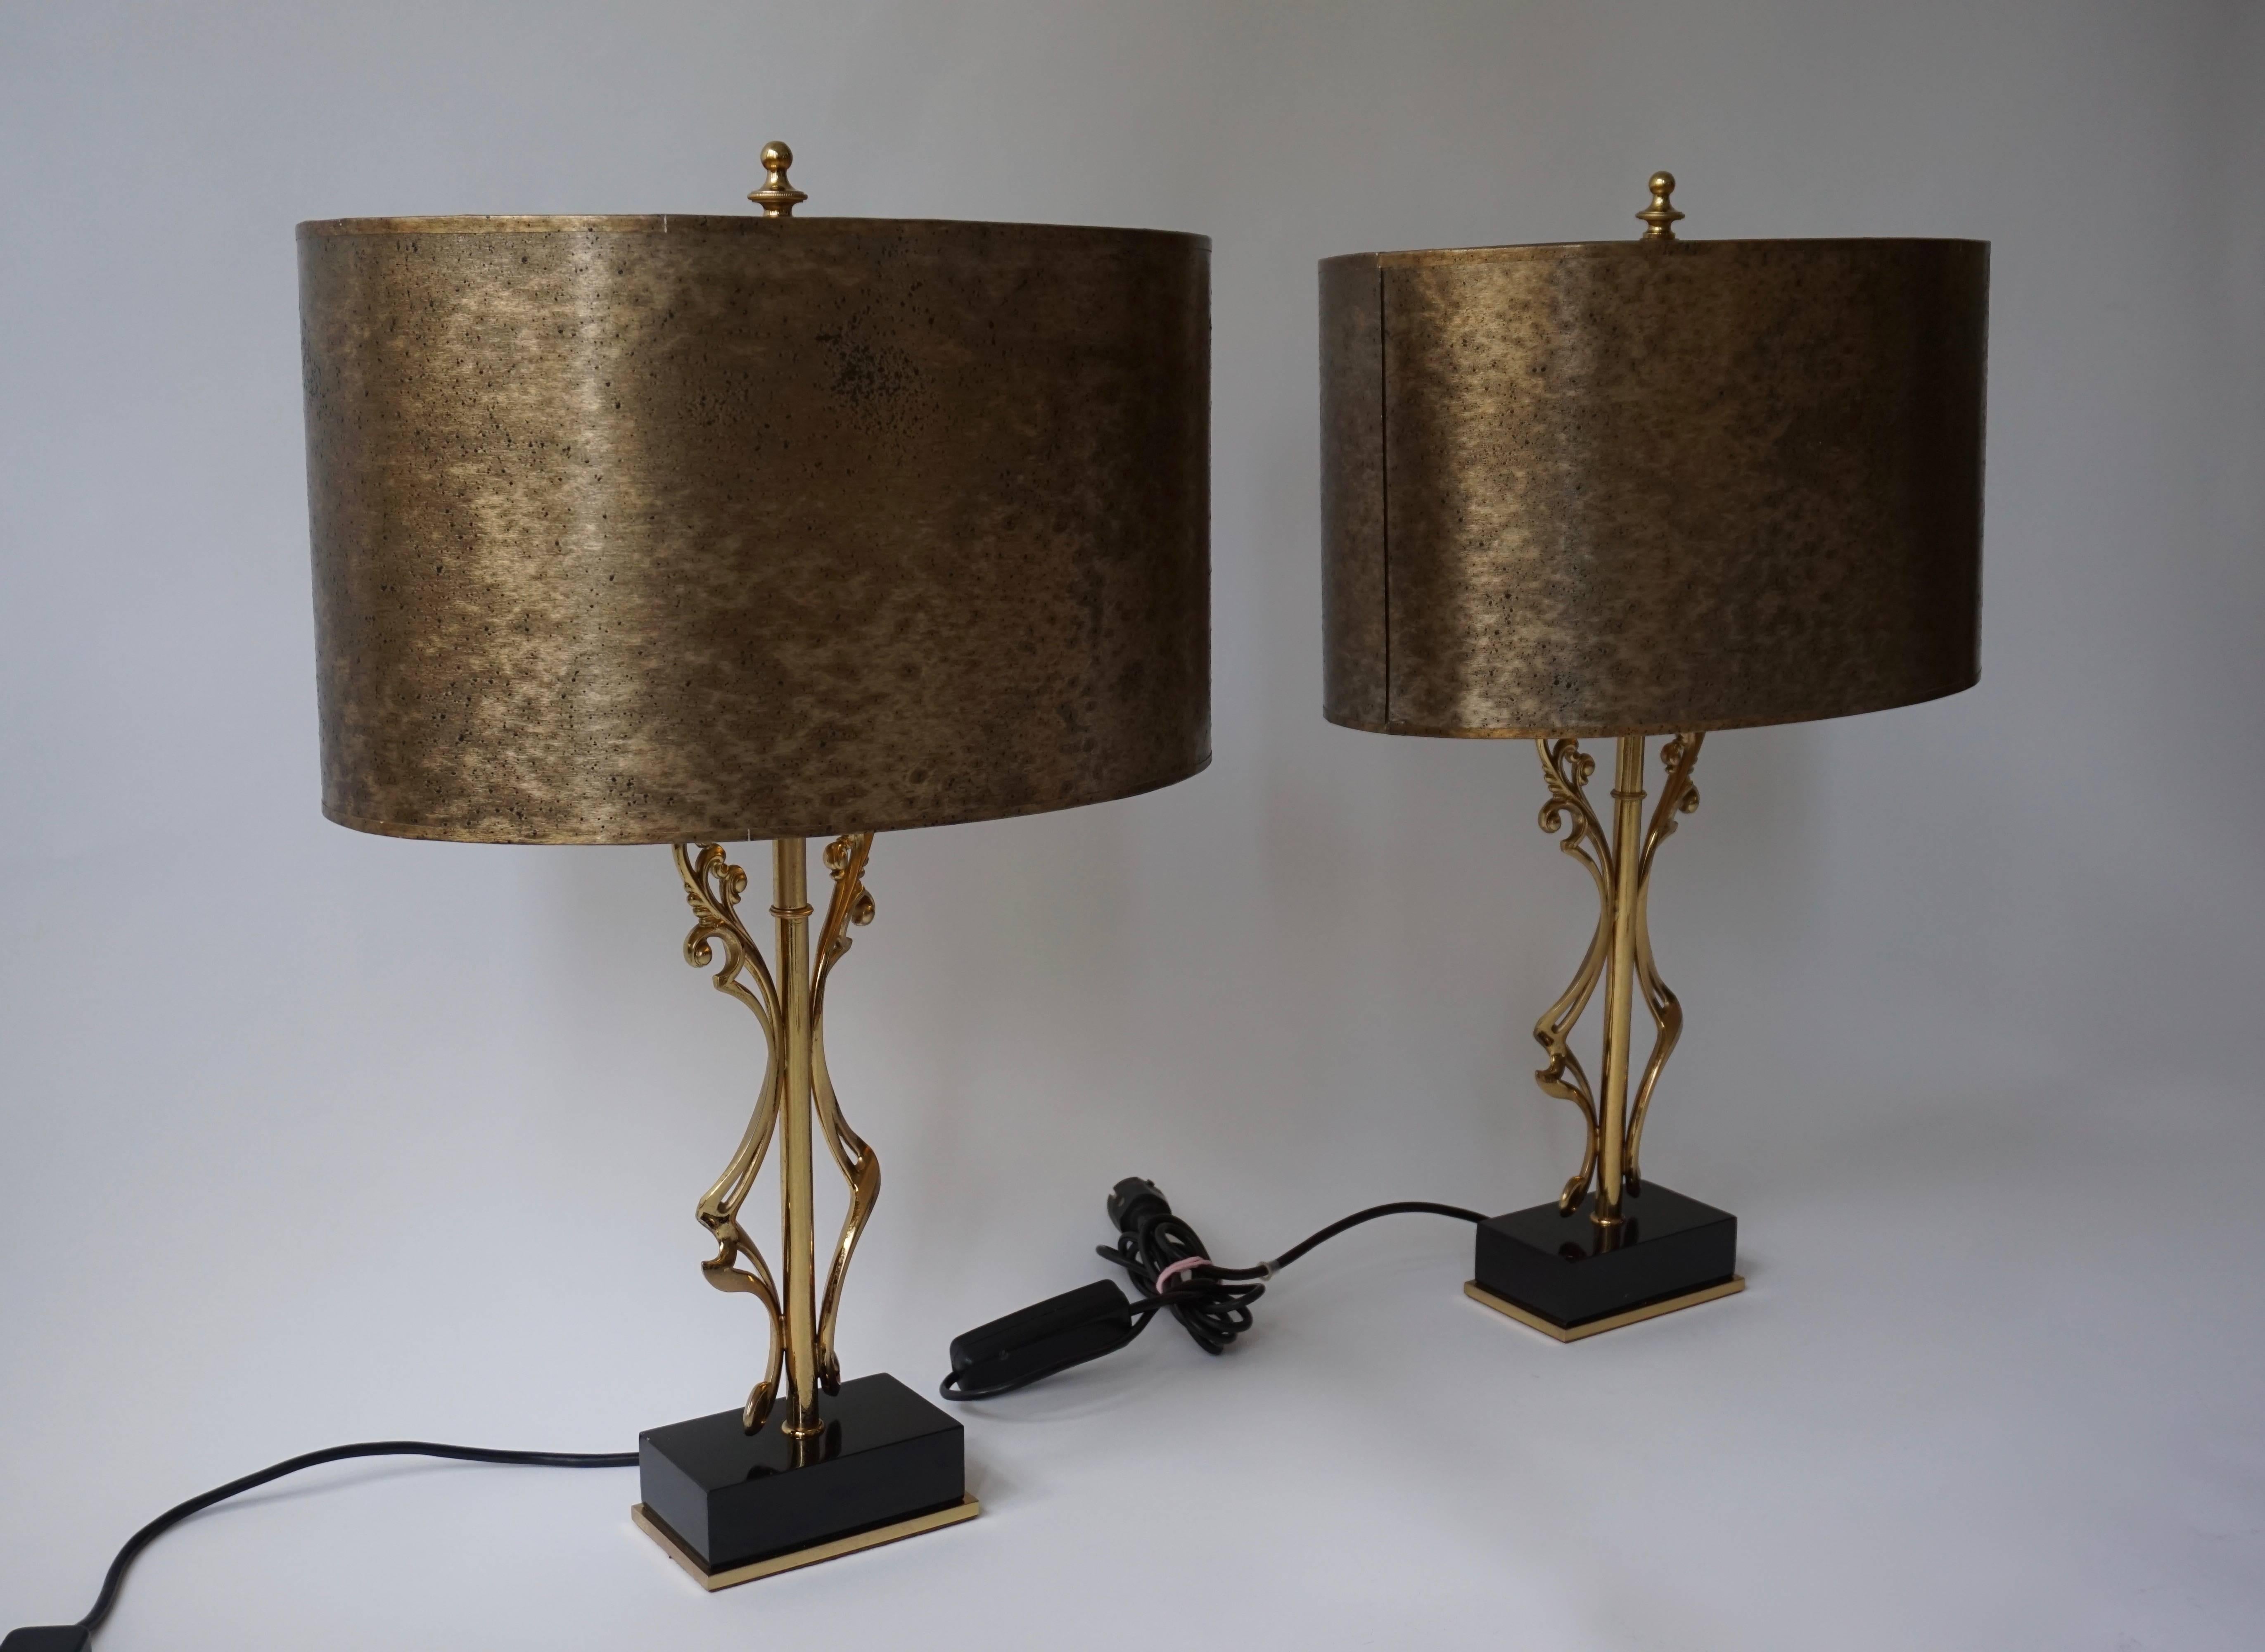 Deux élégantes lampes de table en laiton.
Chaque lampe de table comporte deux ampoules E27 et une ampoule E14.
Les lampes peuvent être commandées individuellement.
Dimensions : Hauteur 68 cm.
Largeur 45 cm.
Profondeur 31 cm.
 